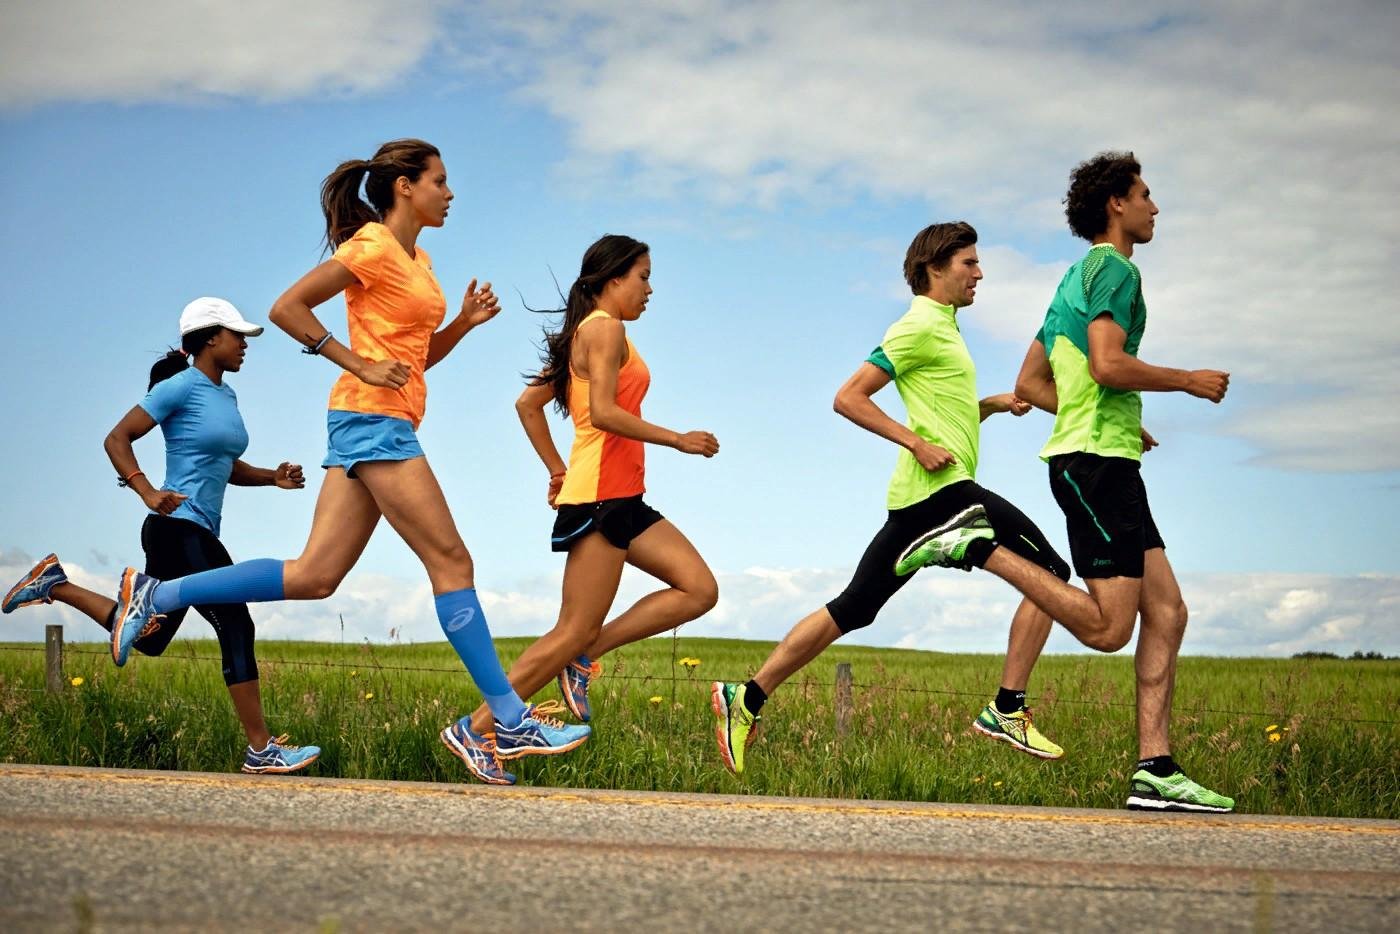 Оздоровительная ходьба скорость. Спорт бег. Спортивные люди. Бегущий человек. Занятие физкультурой и спортом.